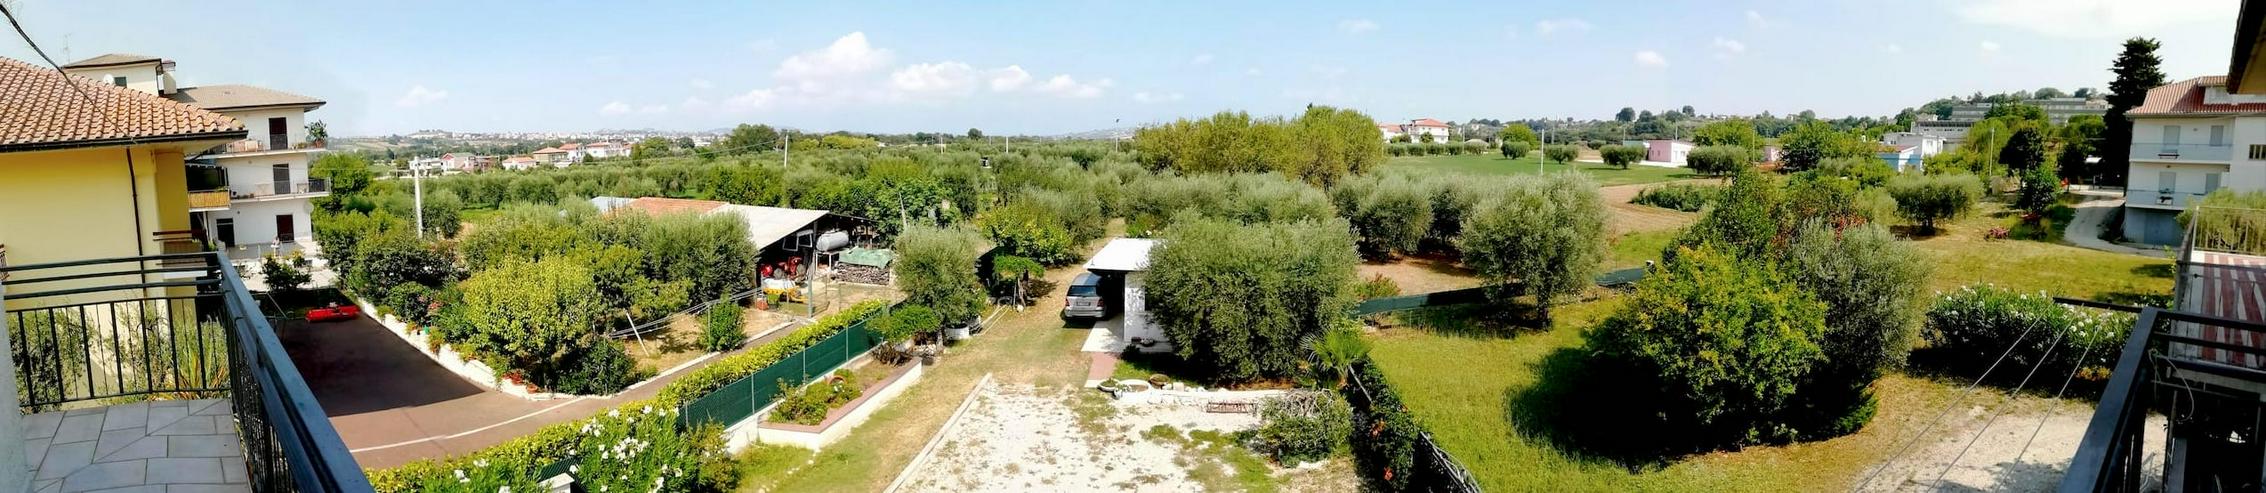 Große voll renovierte und vollmöbilierte Haushälfte mit 1600m² Grundstück in voller Natur zwischen Olivenbäumen, sanften Hügel und Meer. Italien, Abruzzen - Haus kaufen - Bild 7